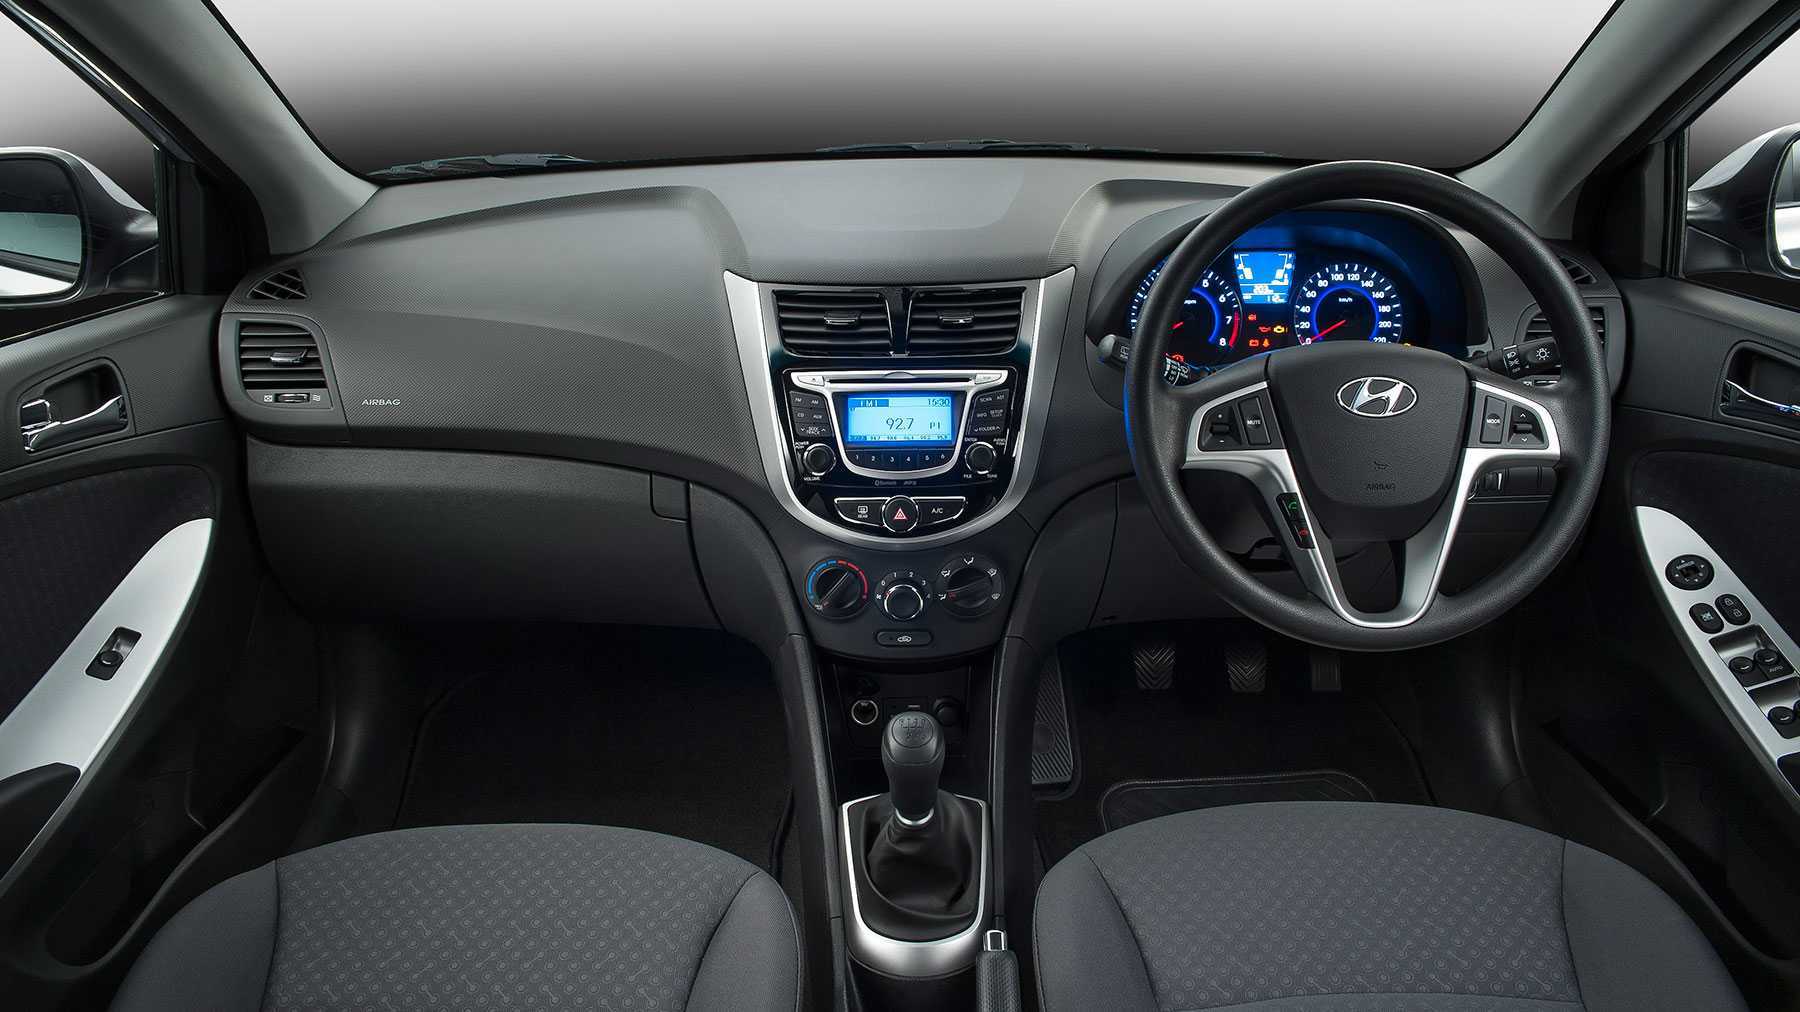 Thiết kế nội thất tinh tế của xe Hyundai Accent 1